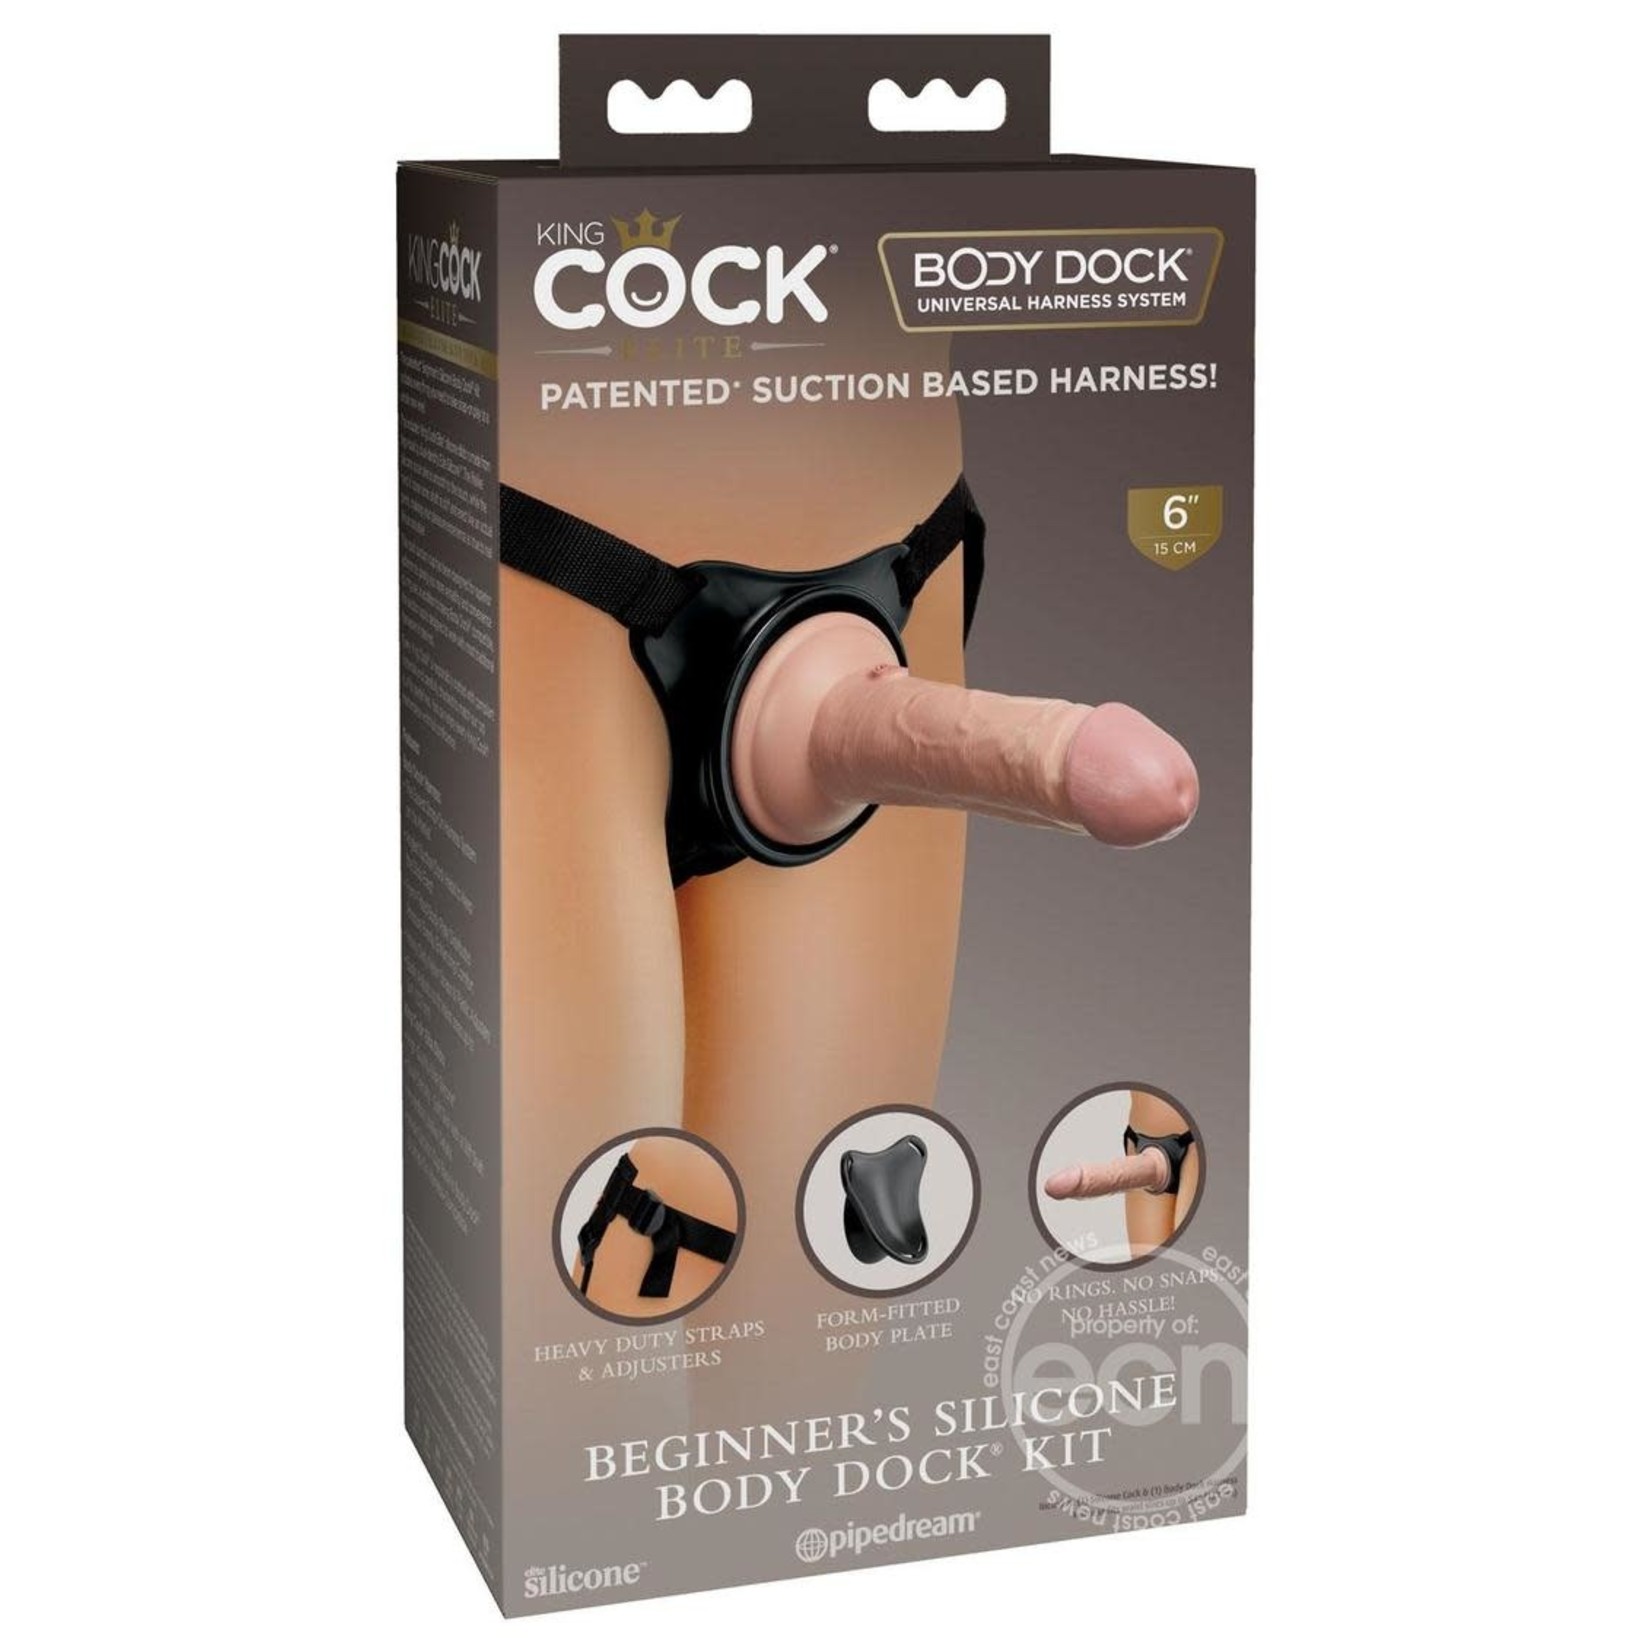 King Cock Beginner's Silicone Body Dock Strap-on Kit With Dildo 6in - Vanilla/Black